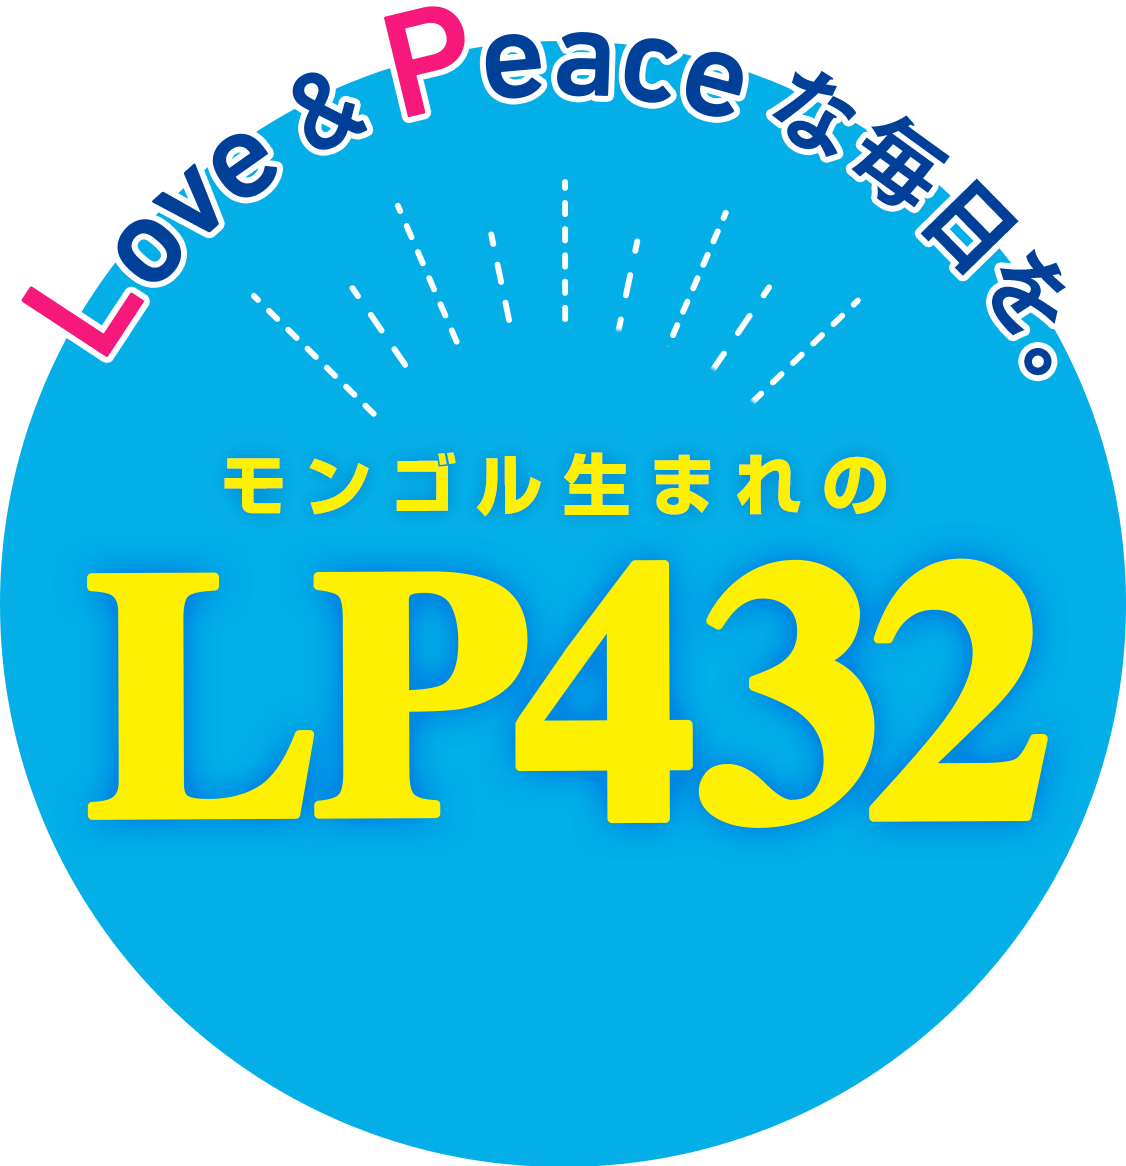 LOVE&PEACEな毎日を モンゴル生まれのLP432